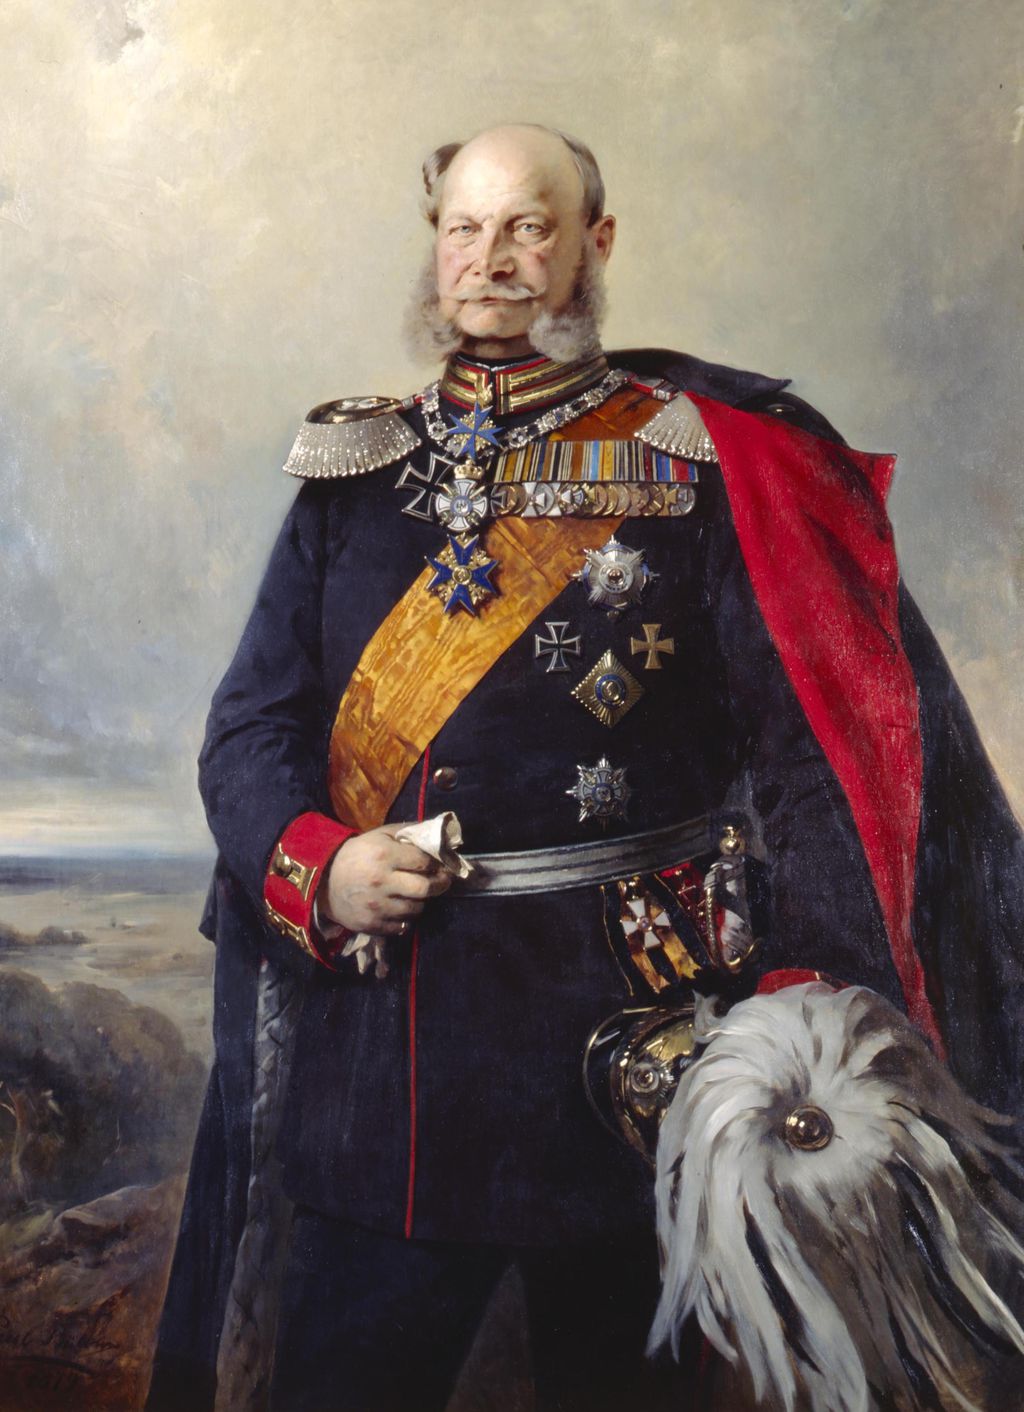 Exponat: Gemälde: "Kaiser Wilhelm I. in der Uniform eines Feldmarschalls des 1. Garderegiments zu Fuß", 1879